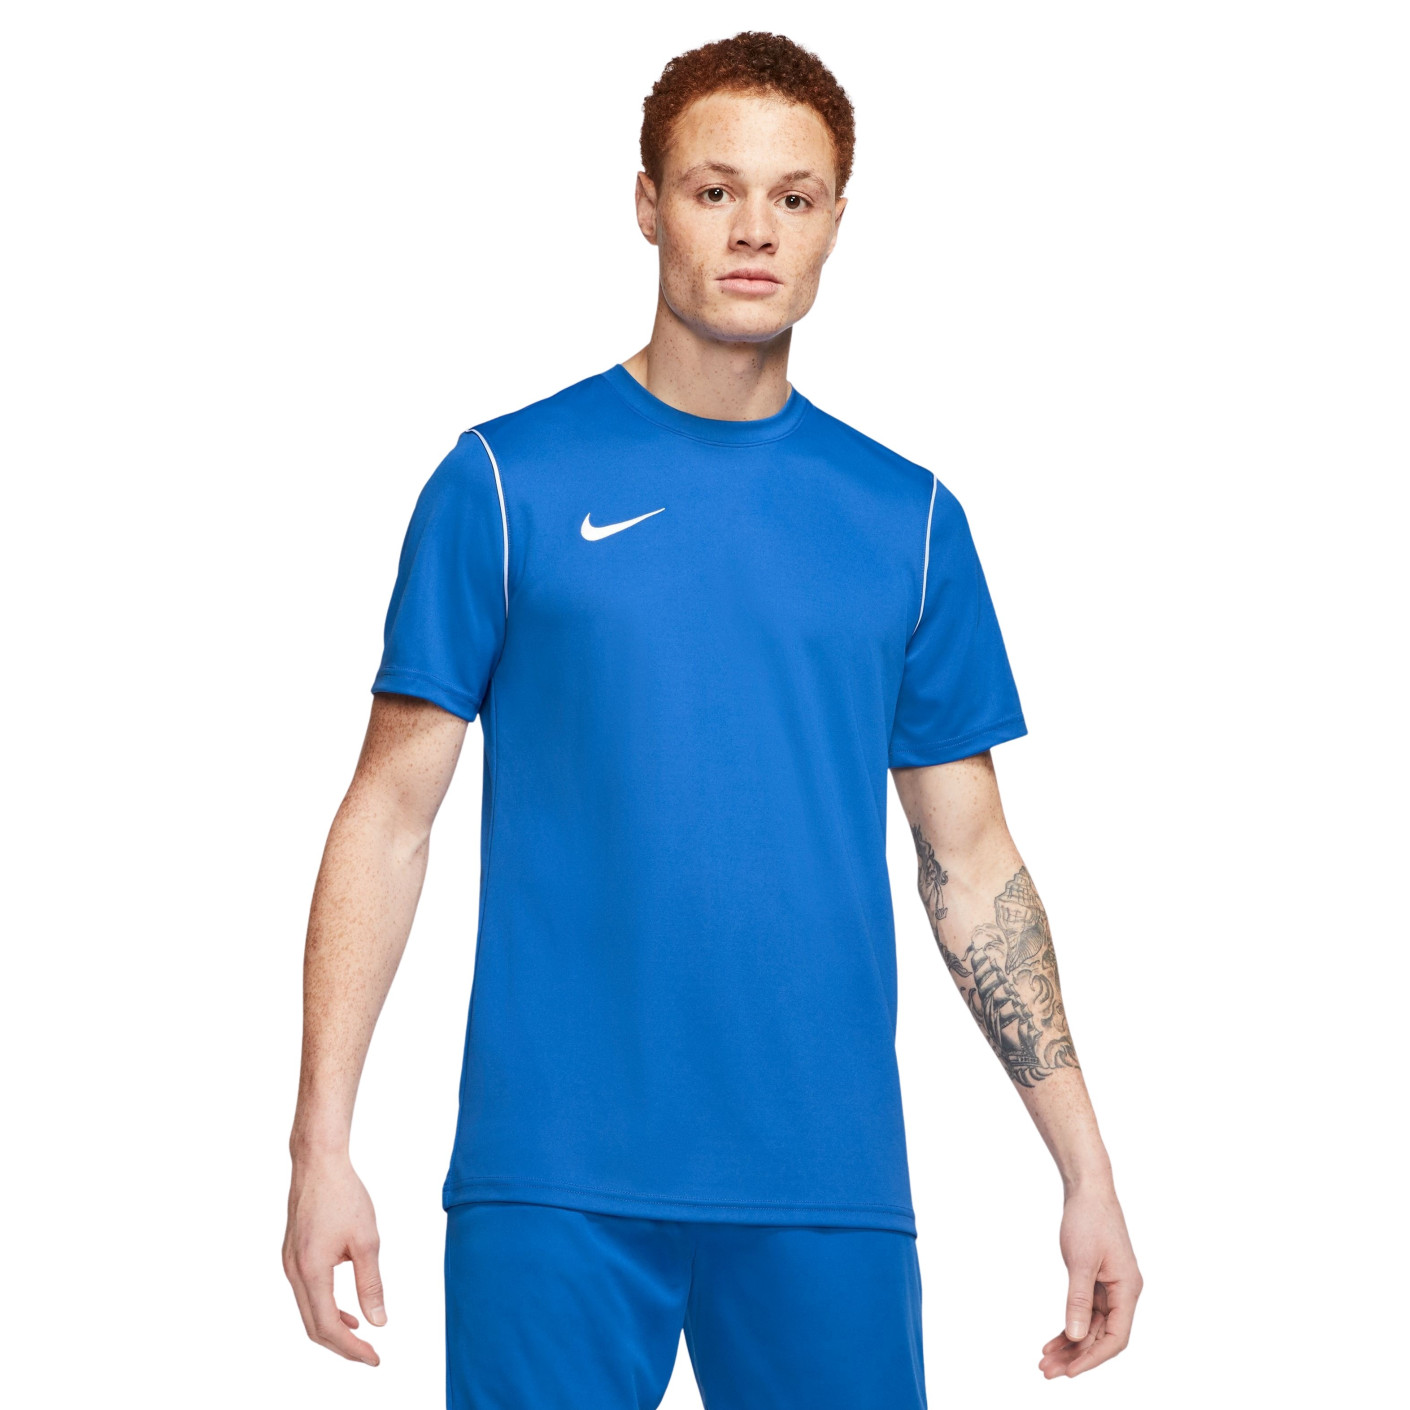 Nike Dry Park 20 Training Shirt Royal Blue